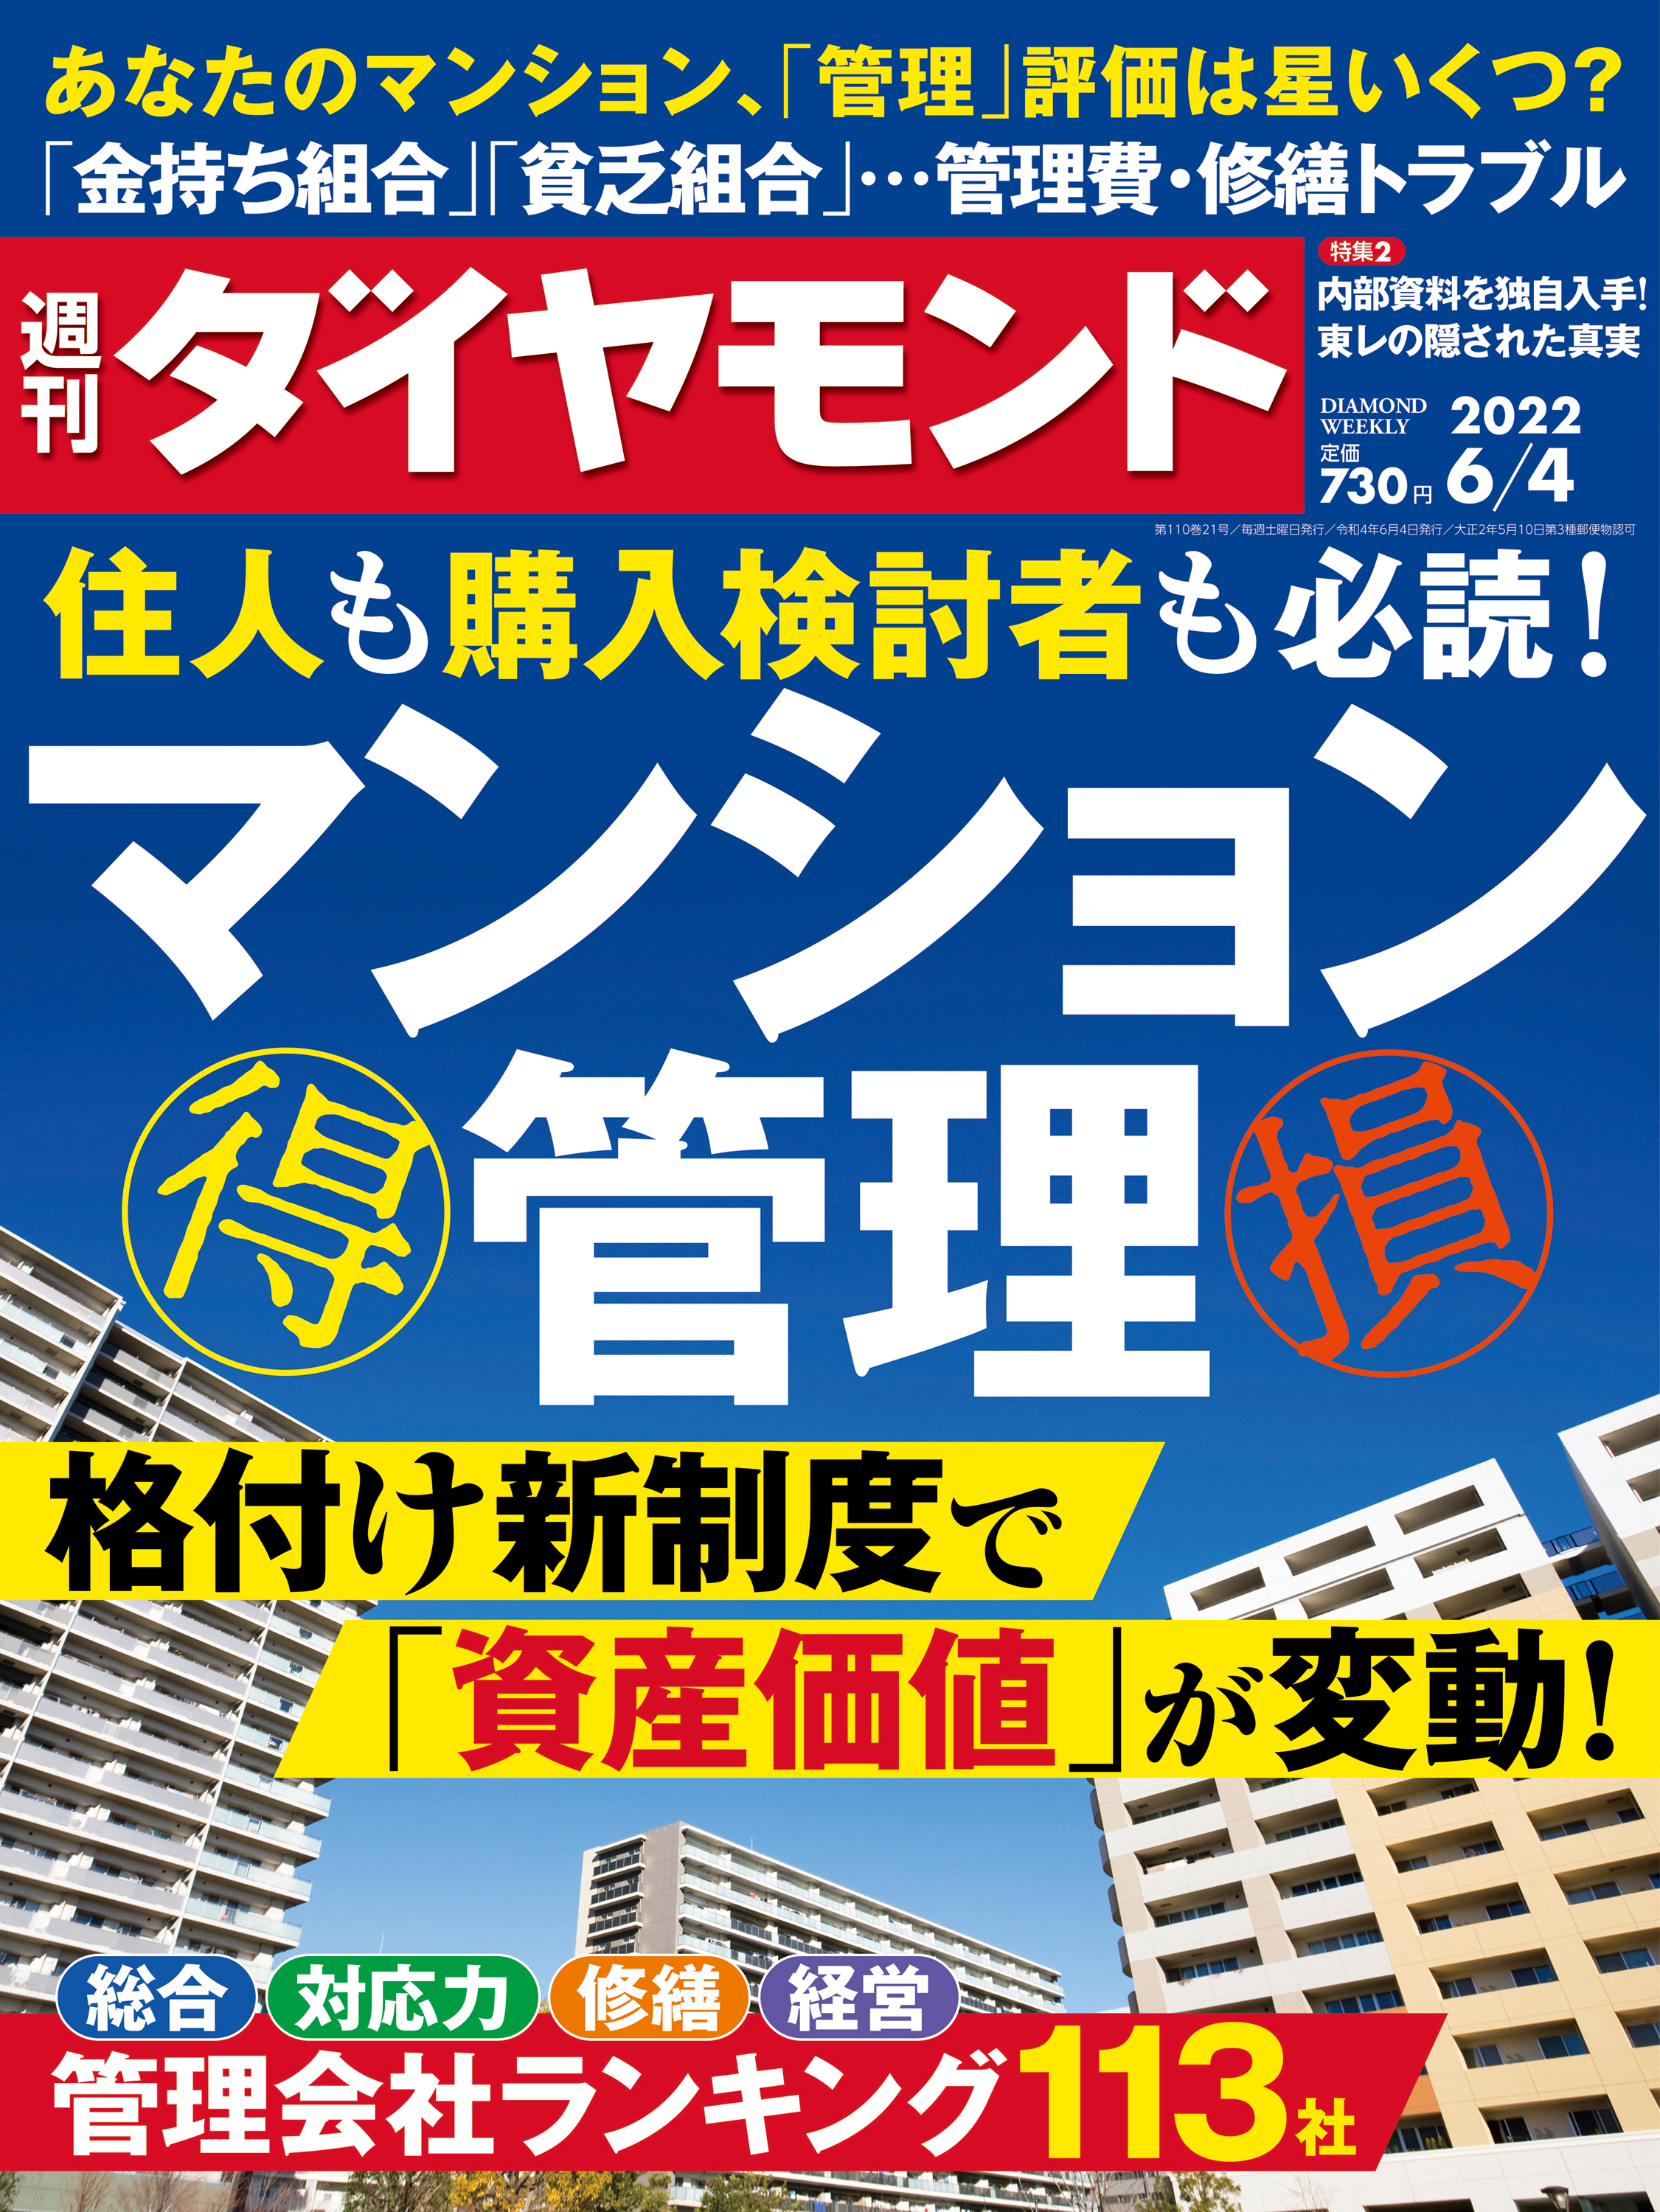 マンション管理(週刊ダイヤモンド 2022年6/4号) - ダイヤモンド社